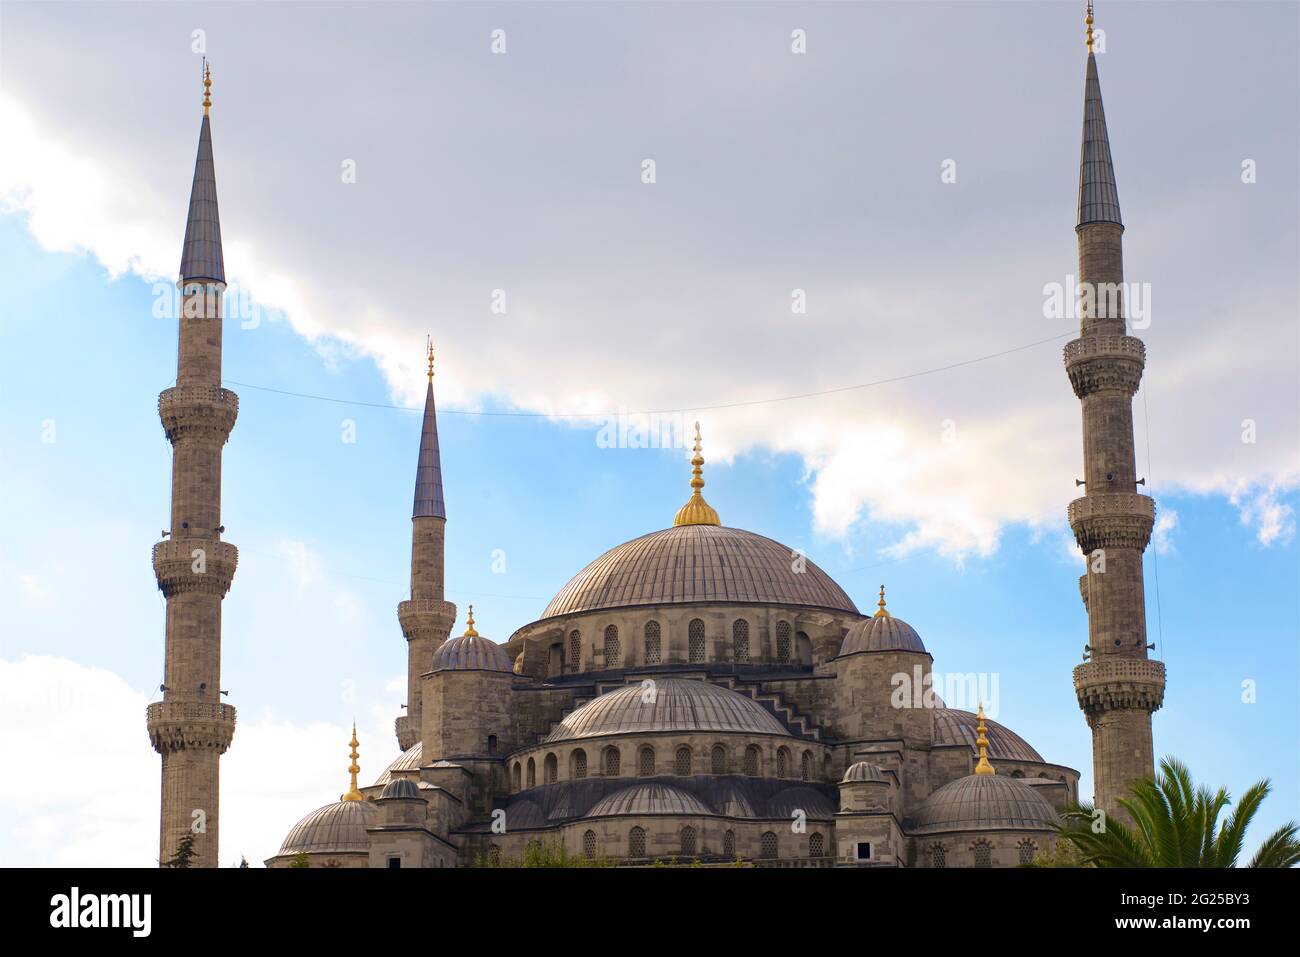 Le cupole centrali della Moschea del Sultano Ahmed (in turco: Sultano Ahmet Camii), conosciuta anche come la Moschea Blu. Una moschea del venerdì dell'epoca ottomana situata a Istanbul, Turchia. Cupola centrale. Foto Stock